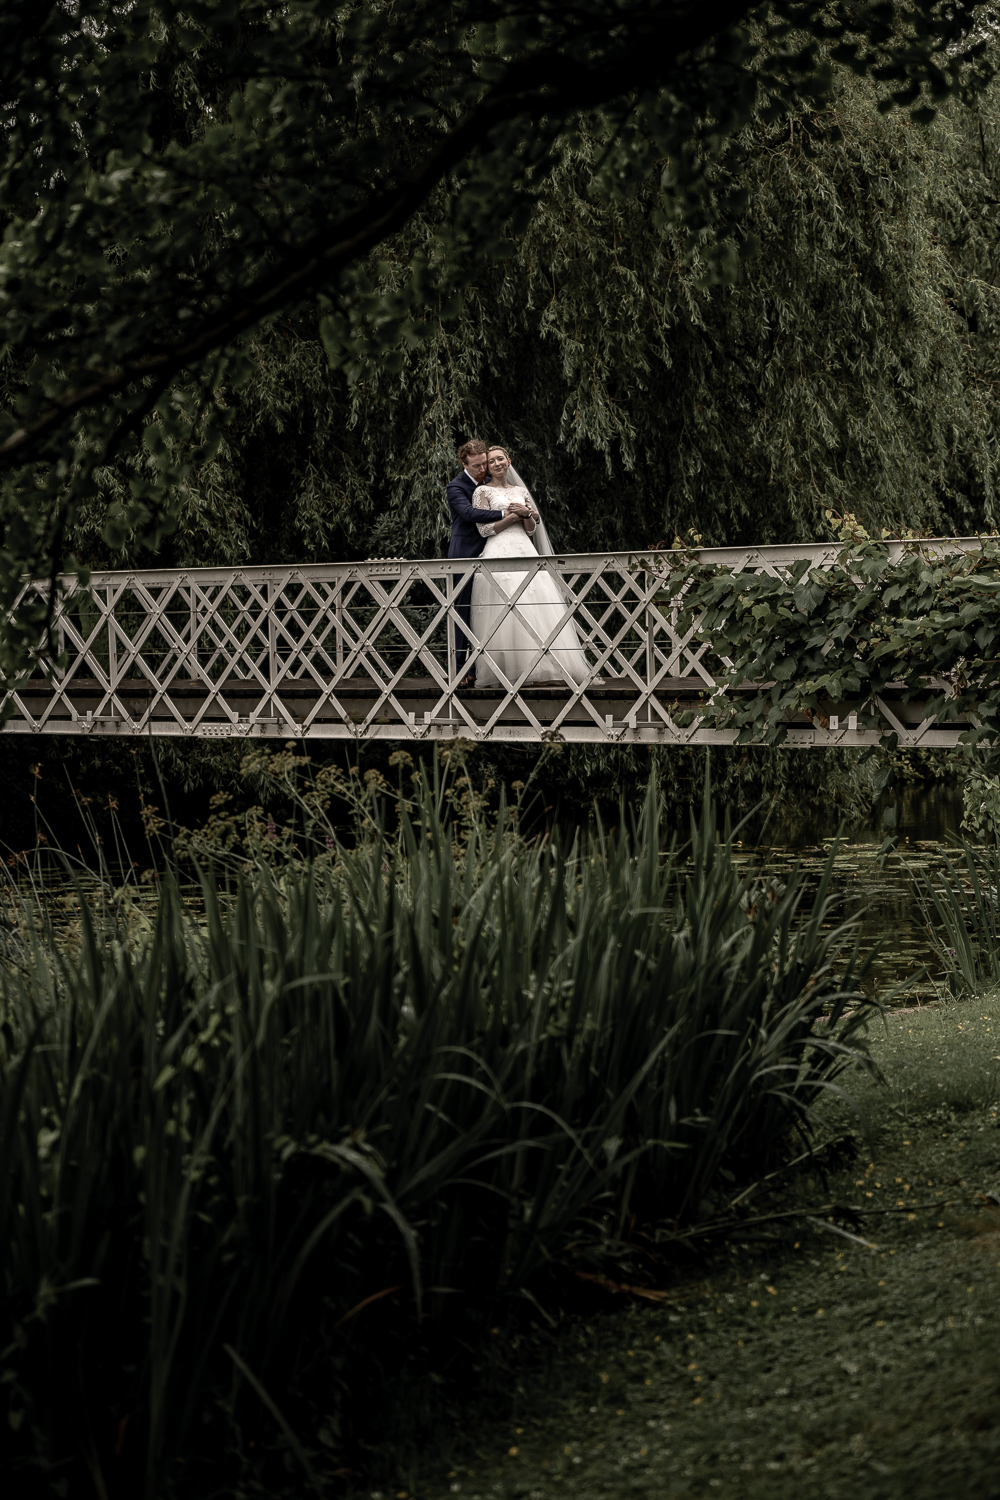 Bryllupsbillede på bro i smuk natur